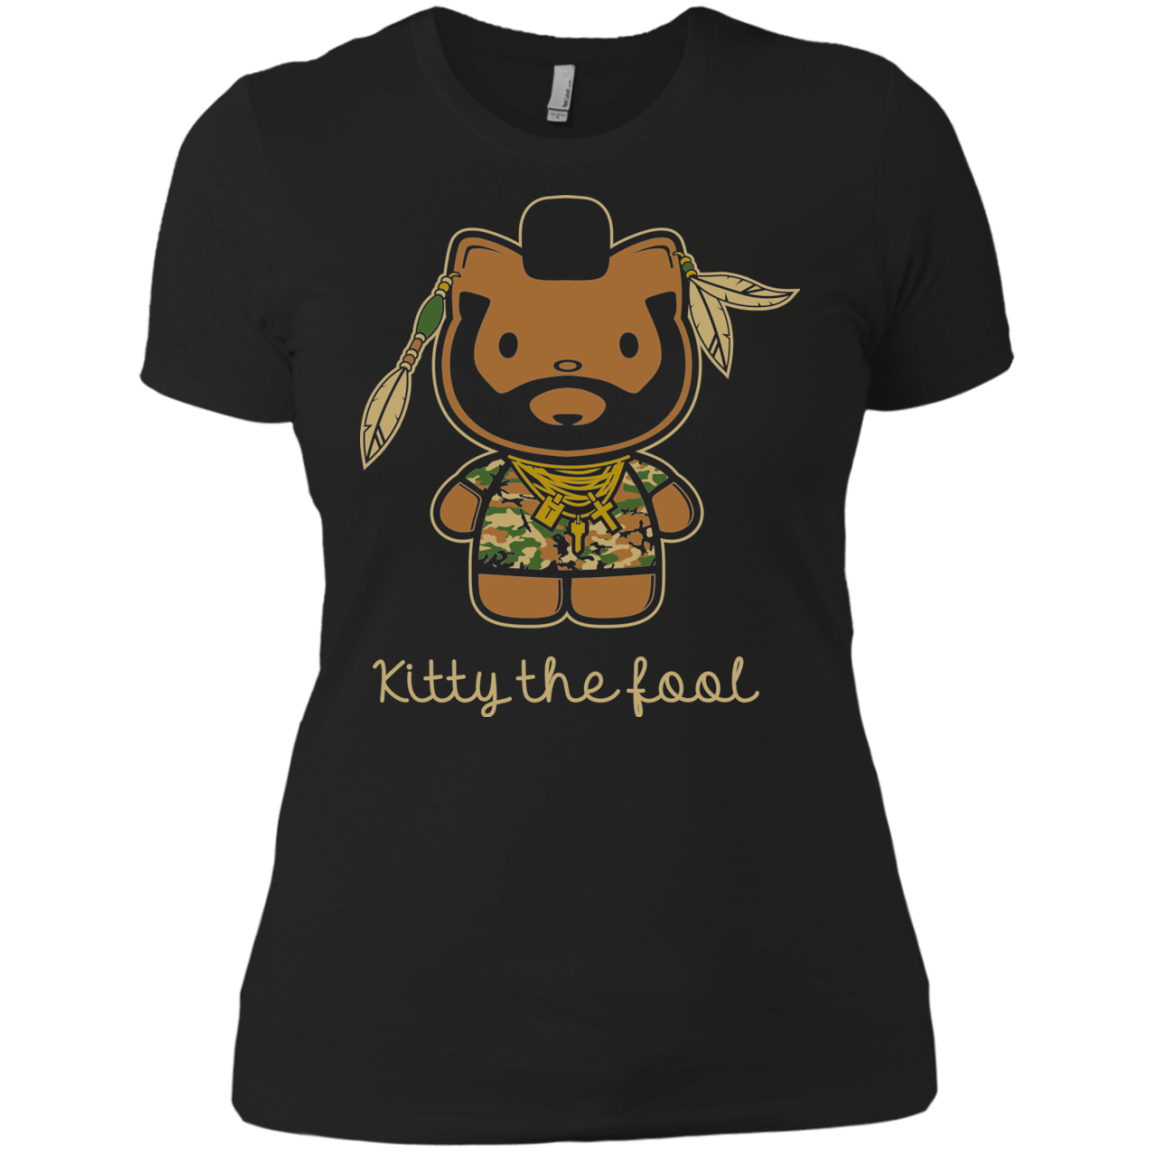 Kitty the Fool Women's Premium T-Shirt